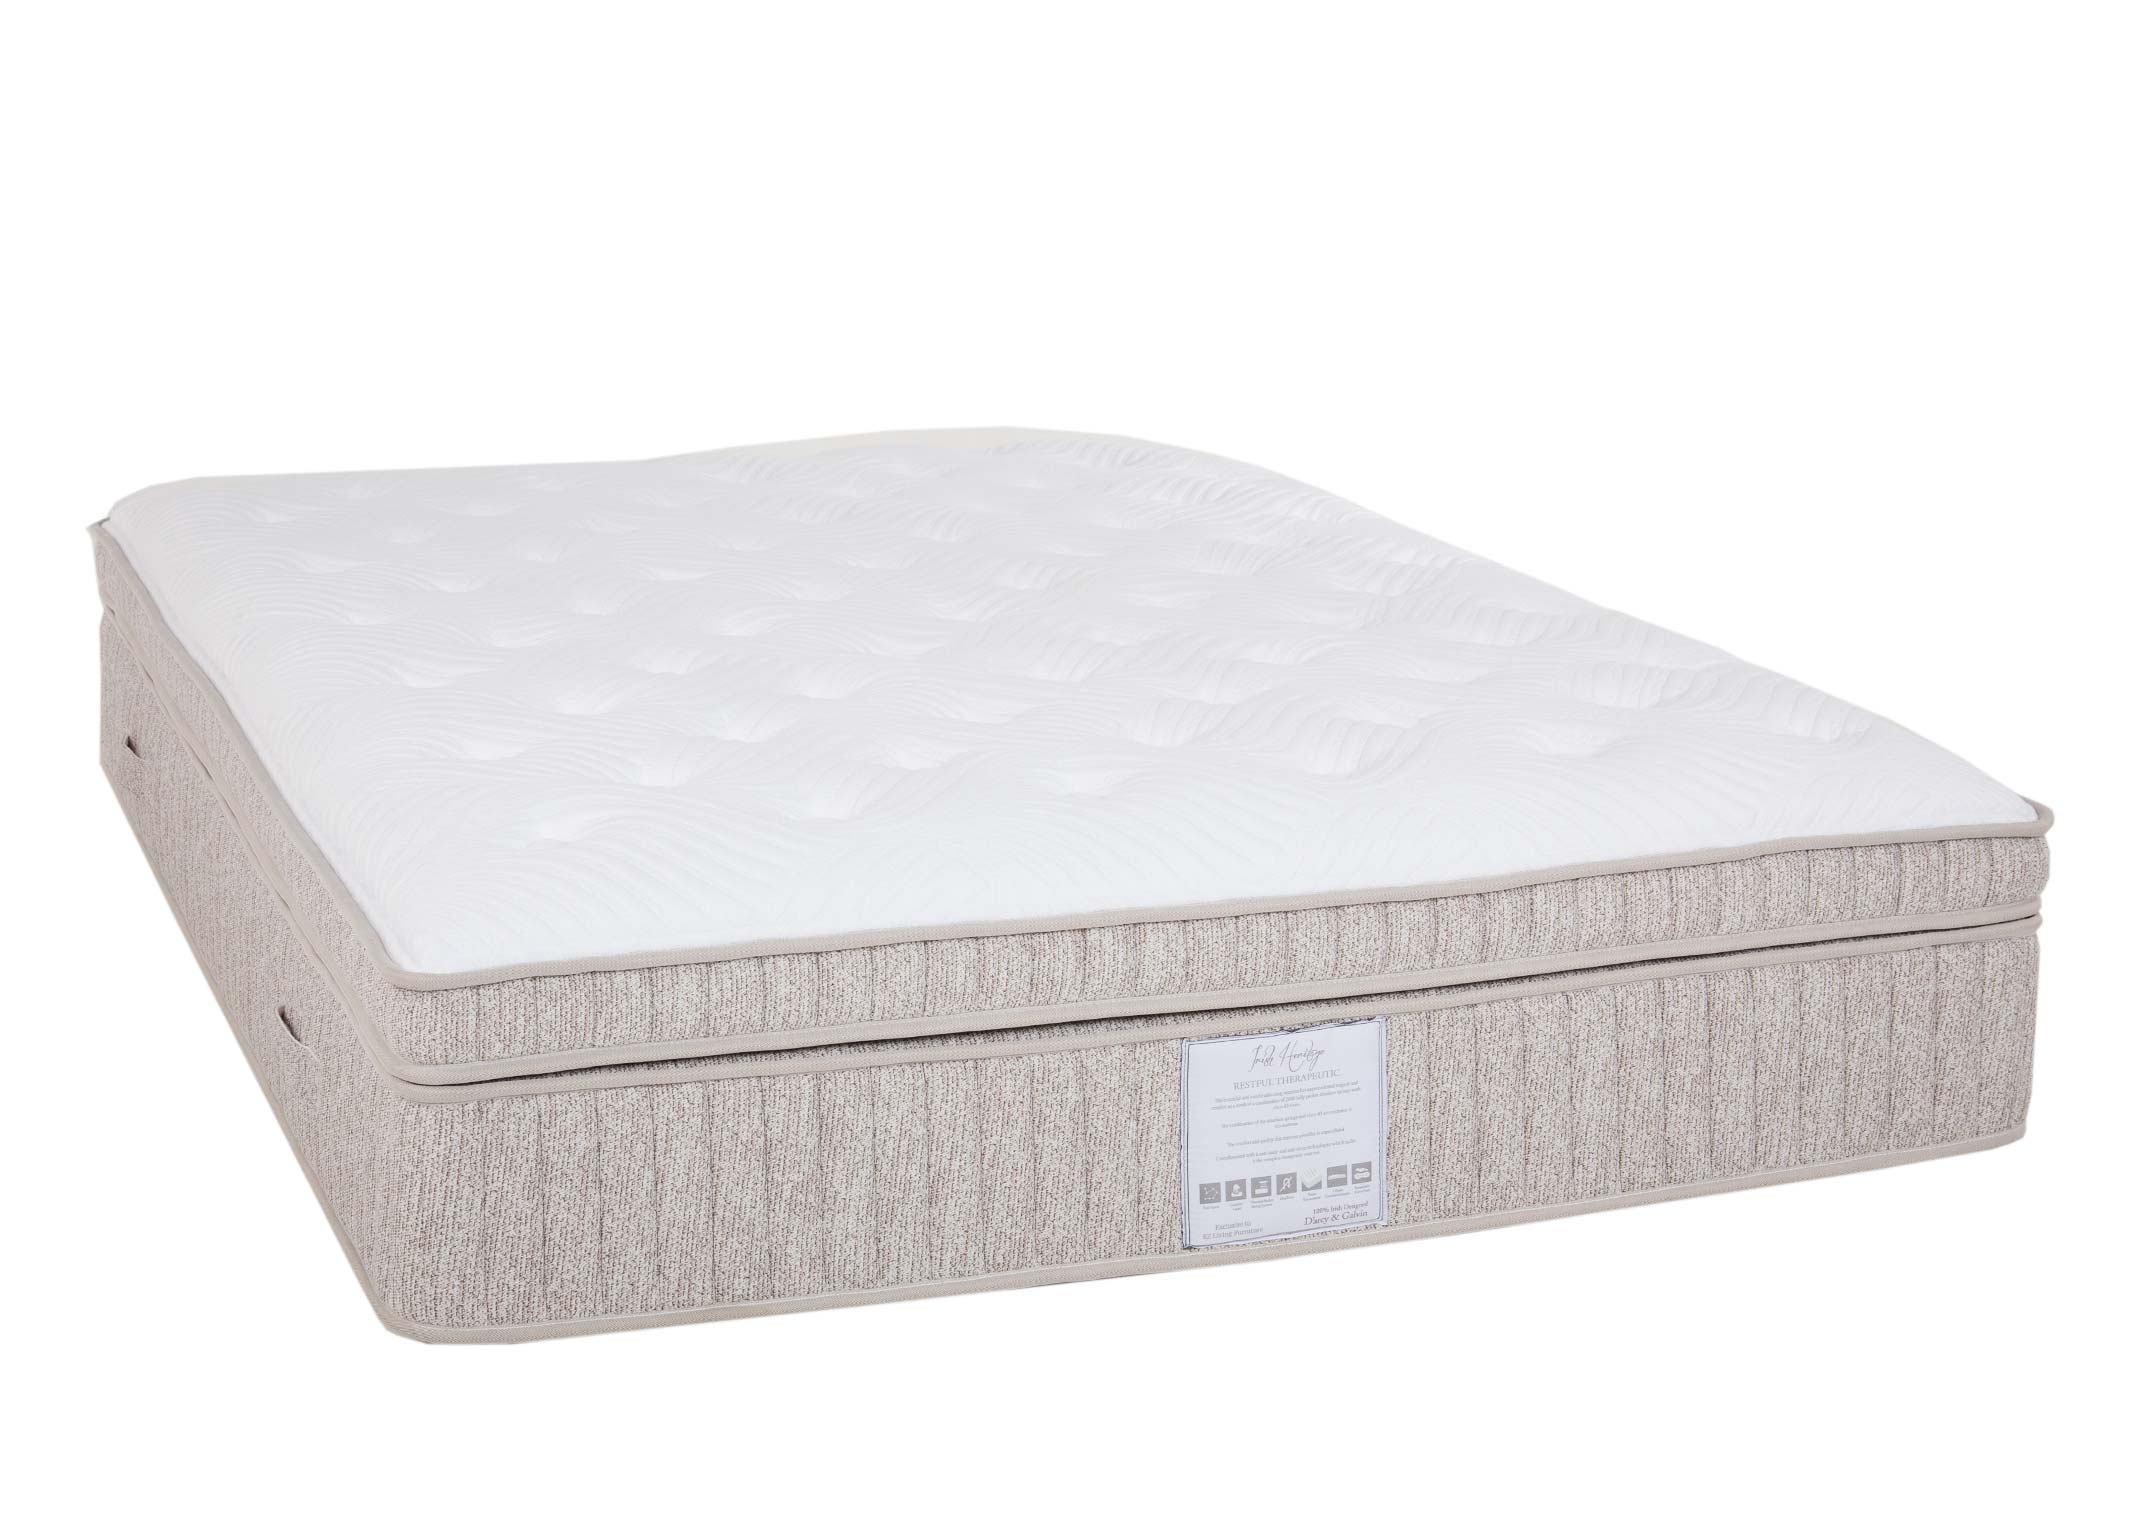 therapeutic king size mattress heat pad